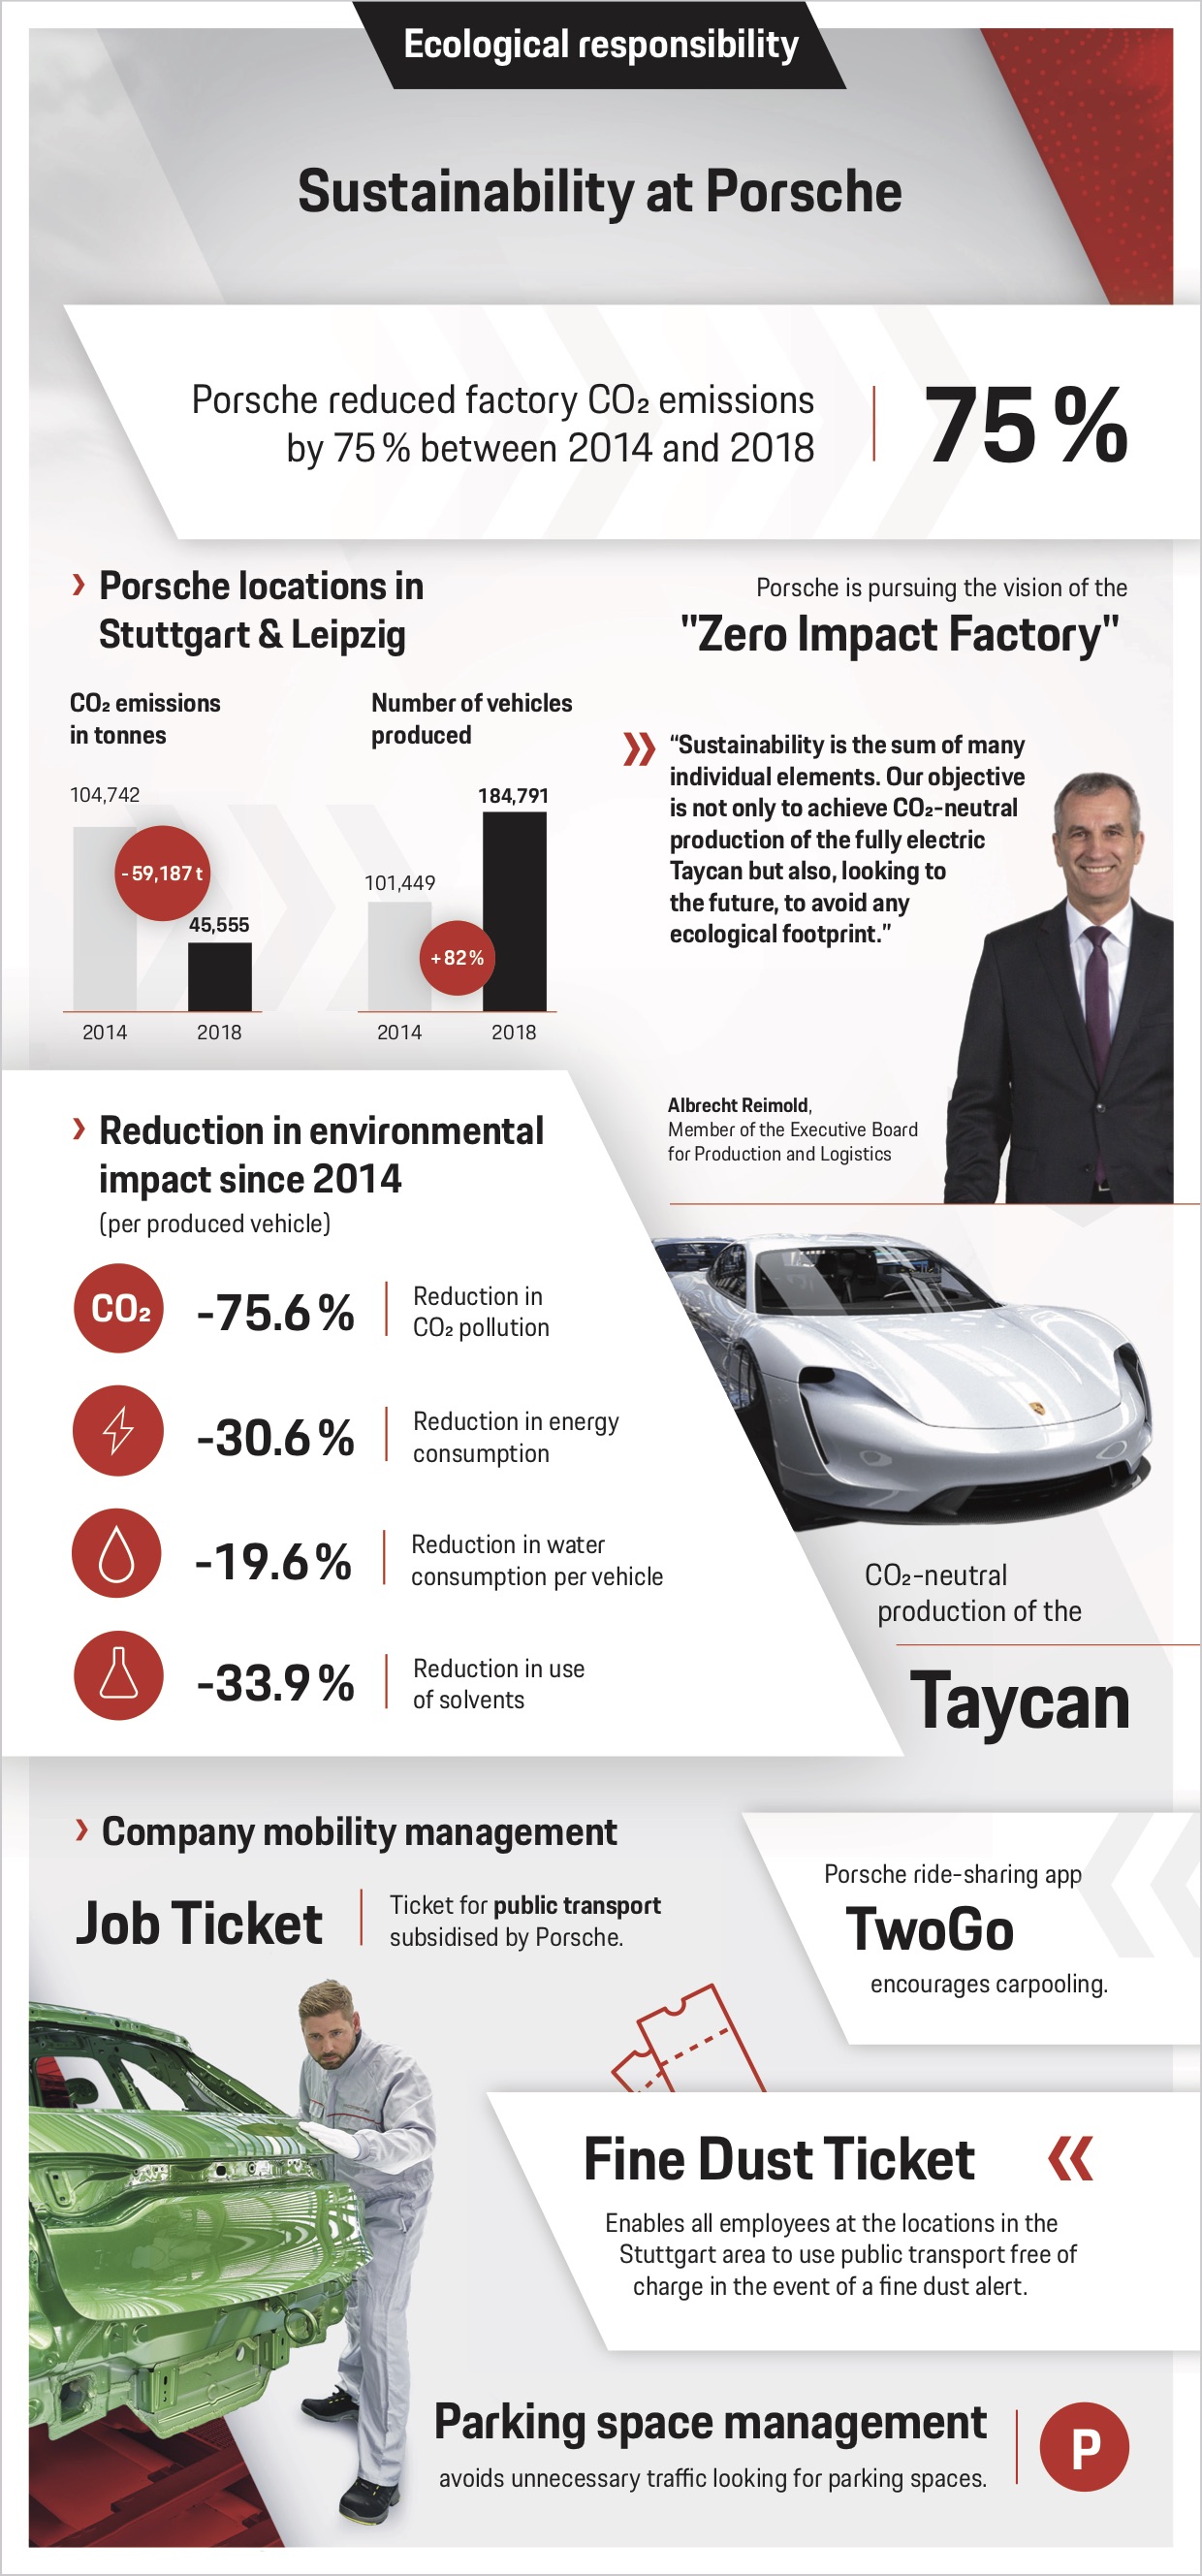 Sostenibilidad en Porsche, infographic, 2019, Porsche AG